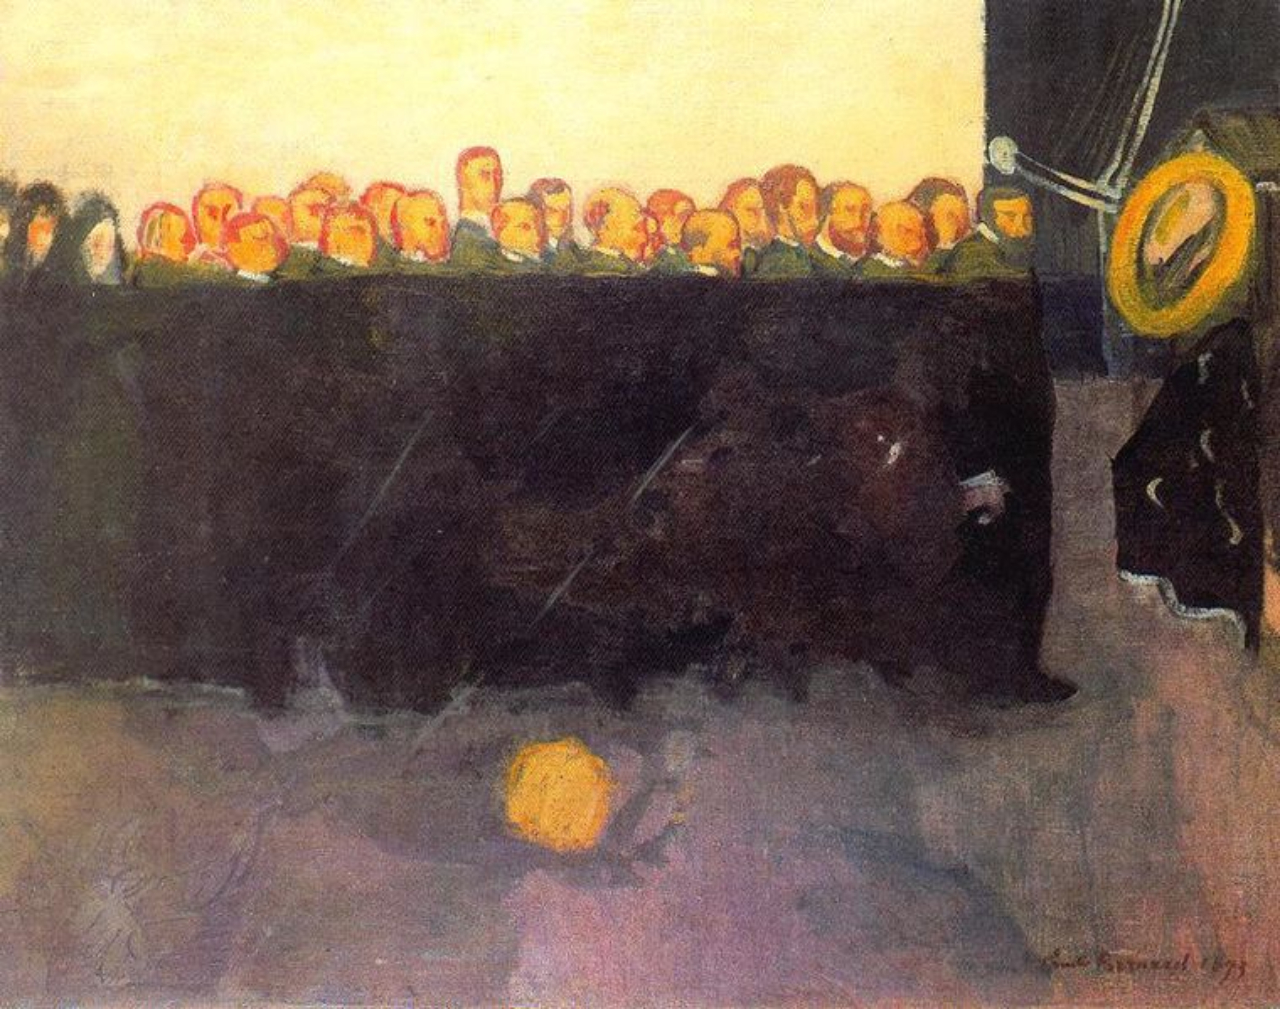 Quadro 'L'Enterrement de Vincent van Gogh' ('O Funeral de Vincent van Gogh', em português), de 1893, produzido pelo francês Émile Bernard